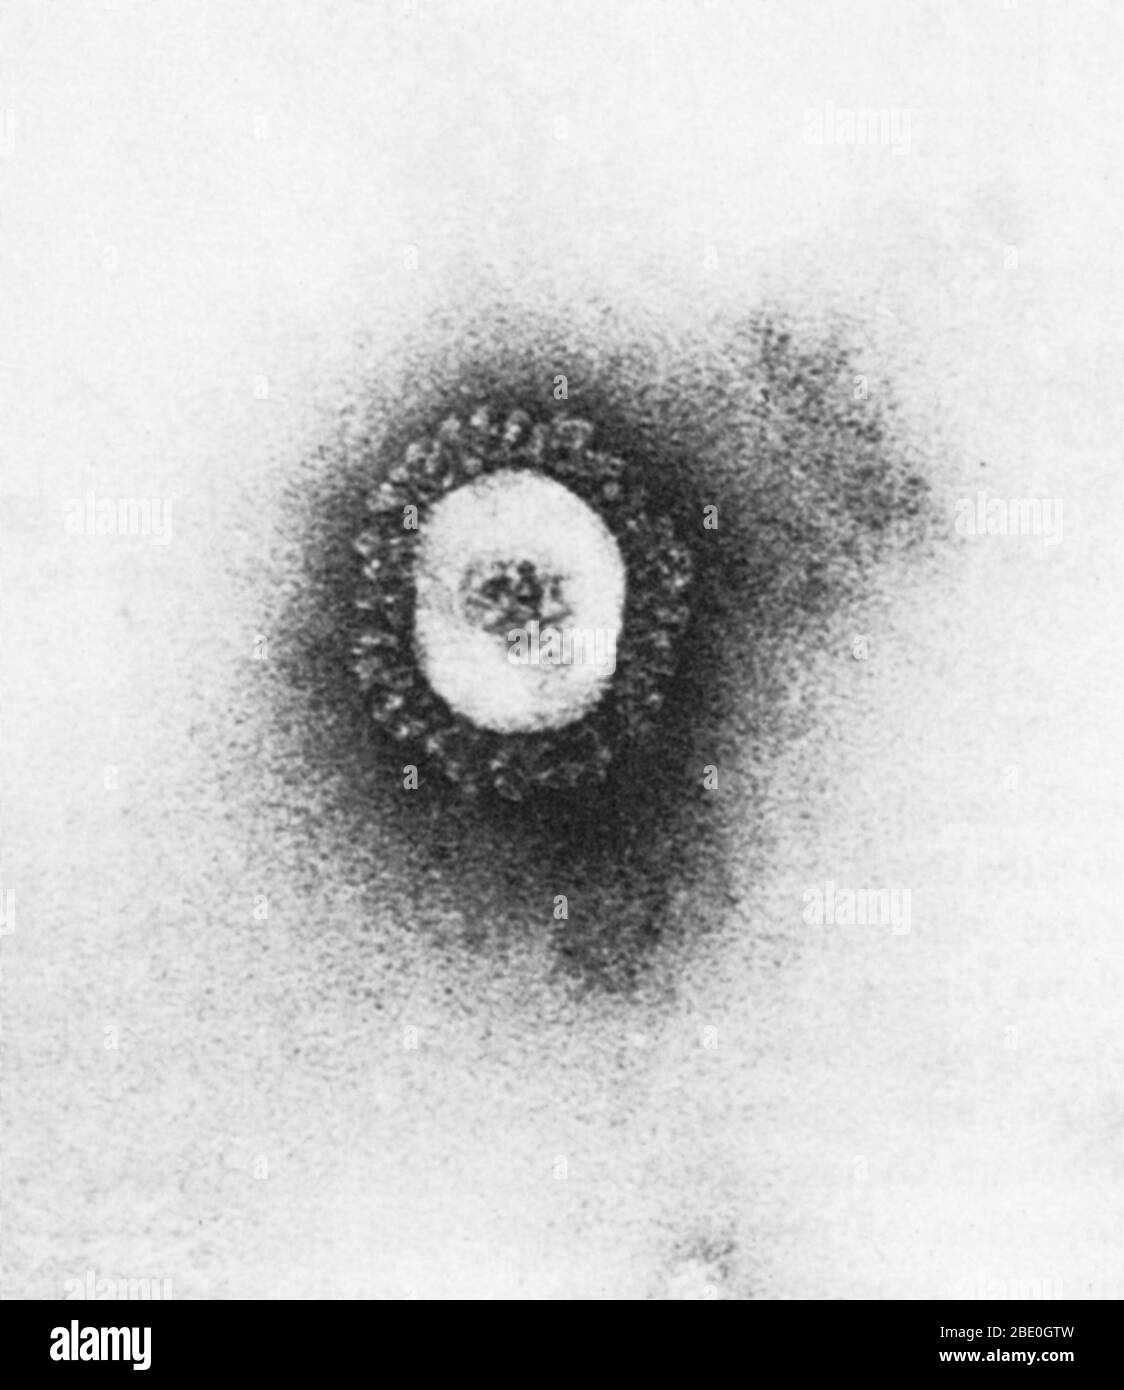 Transmissionselektronenmikrograph (TEM) eines Coronavirus, der die Erkältung verursacht. Coronaviren sind Arten von Viren, die zur Unterfamilie Coronavirinae in der Familie Coronaviridae, in der Reihenfolge Nidovirales gehören. Coronaviren sind eingehüllte Viren mit einem positiv-Sinn-Single-strängten RNA-Genom und mit einem Nukleokapsid von helikaler Symmetrie. Die genomische Größe von Coronaviren reicht von etwa 26 bis 32 Kilobasen, die größte für ein RNA-Virus. Stockfoto